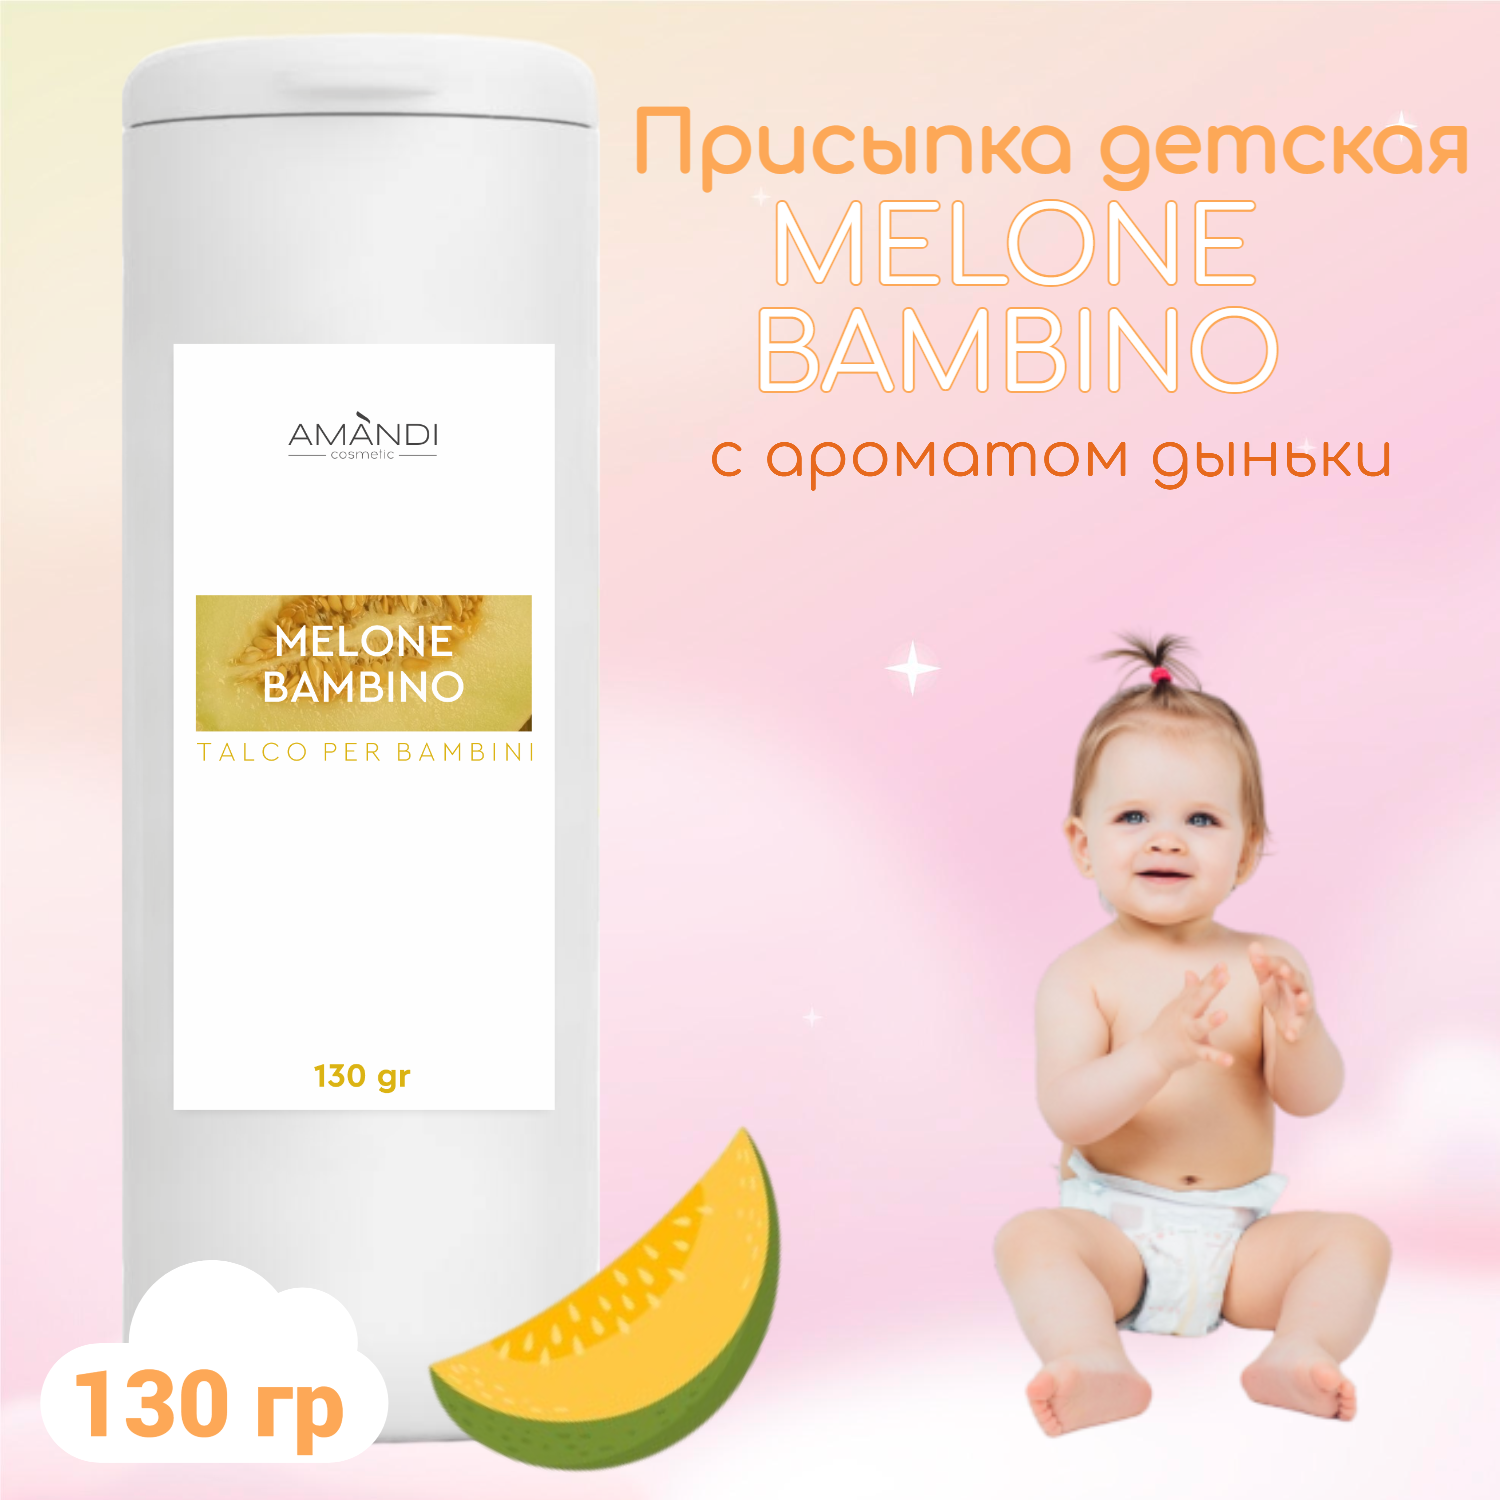 Присыпка детская AMANDI MELONE BAMBINO с ароматом дыни 130 грамм - фото 2